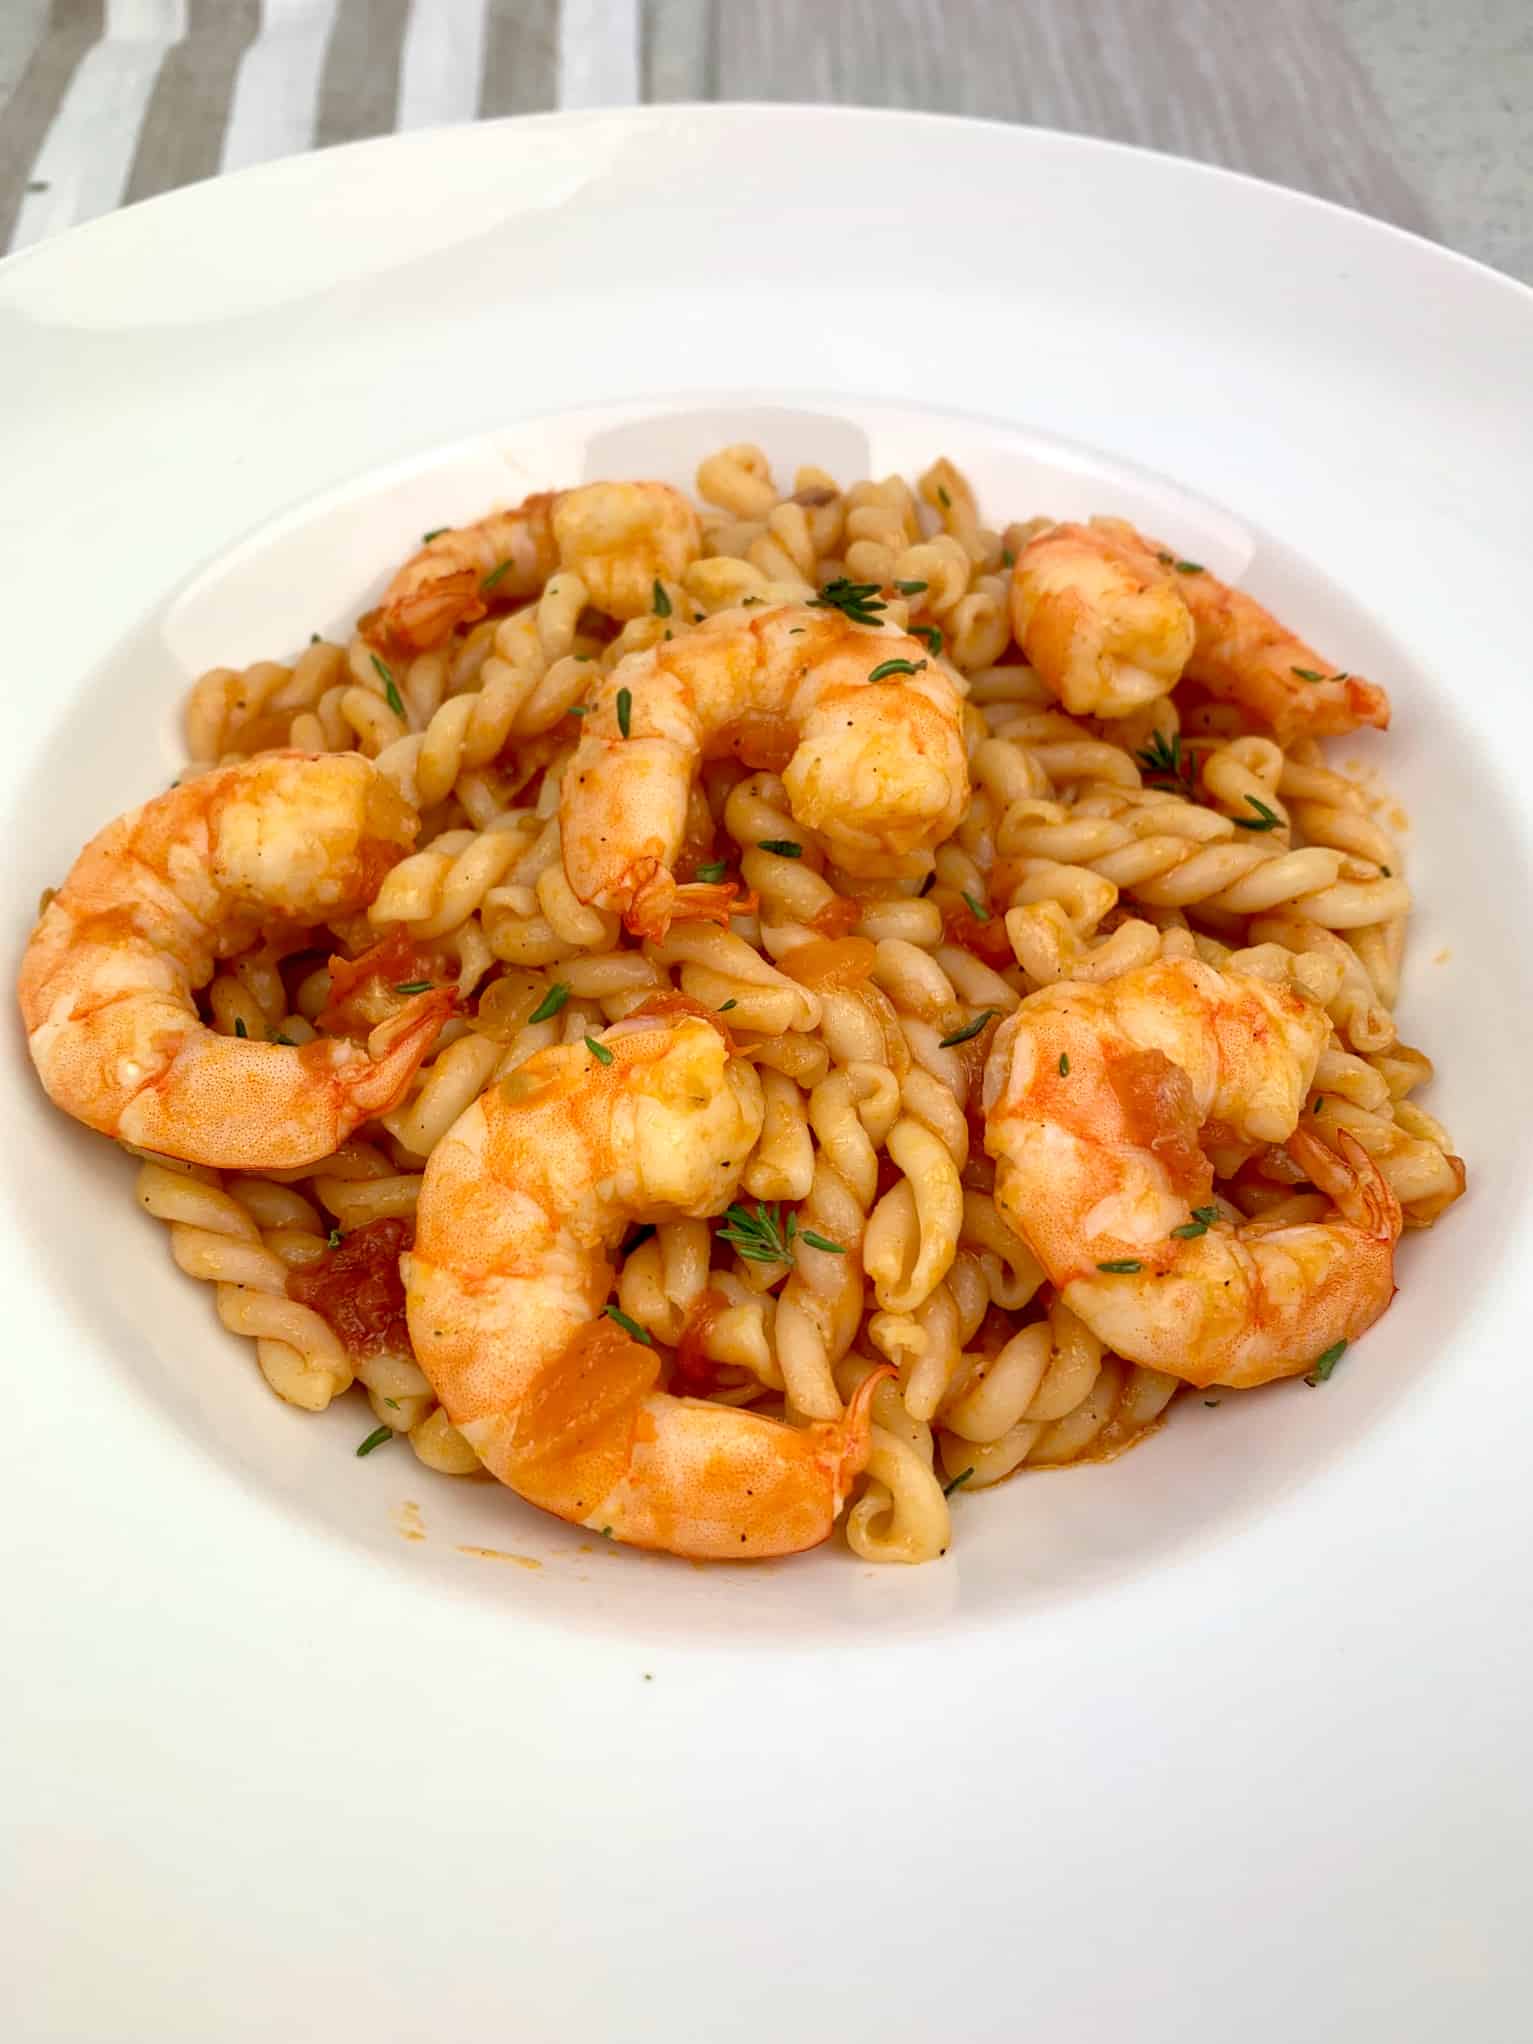 Shrimp with pasta